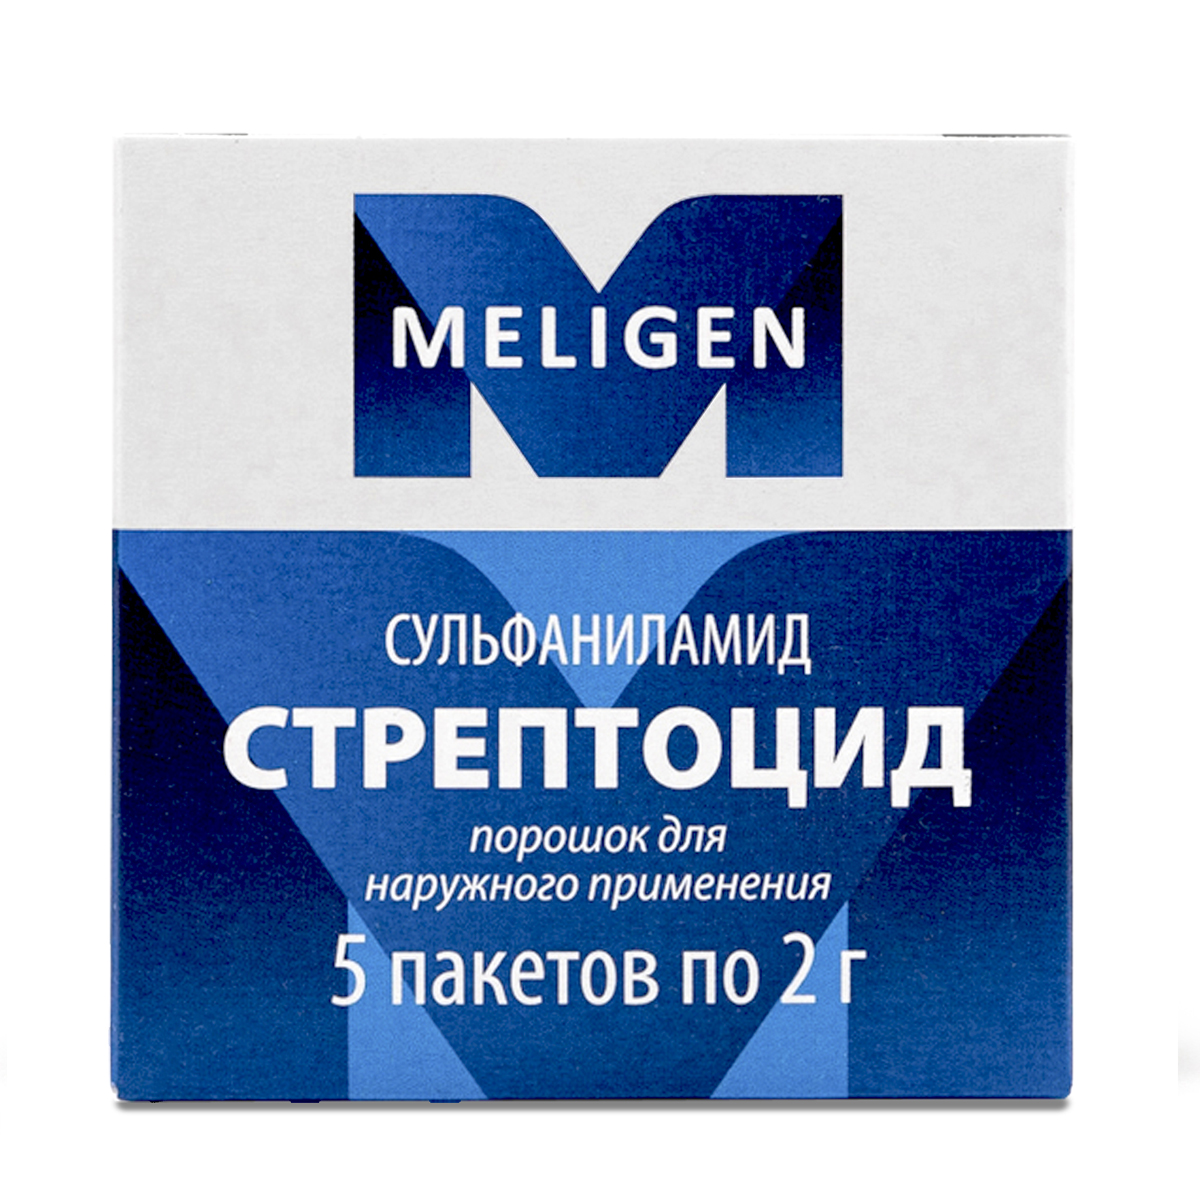 Стрептоцид, порошок, пакетики 2 г, 5 шт. дона порошок 1500 мг пакетики 20 шт